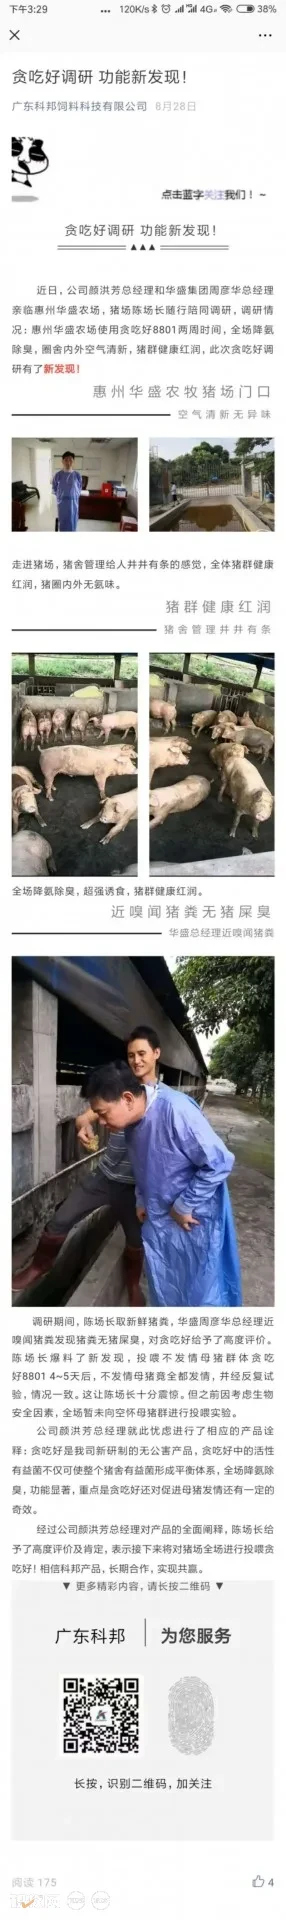 广东科邦【贪吃好】入围中国猪业抗疫增效技术创新大赛候选项目